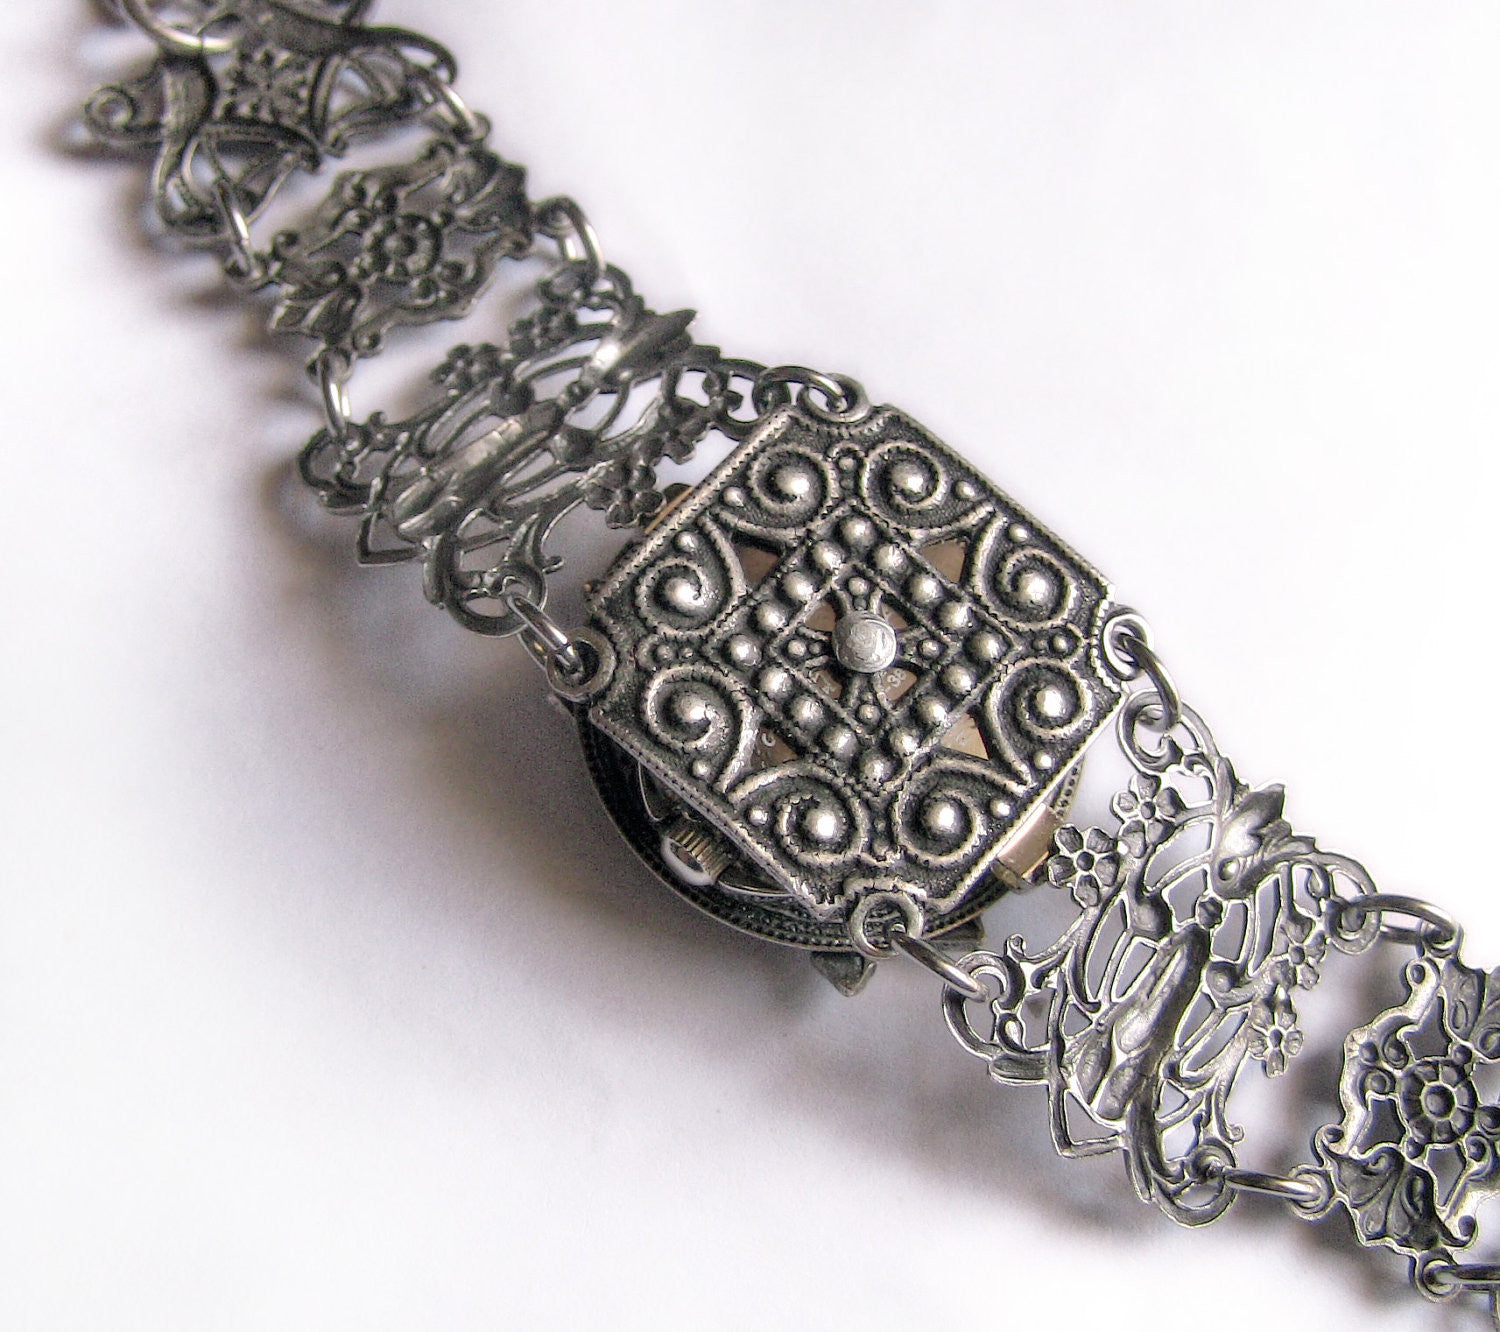 Silver ladies wrist watch bracelet Gothic watch Victorian Jewelry - Aranwen's Jewelry
 - 4